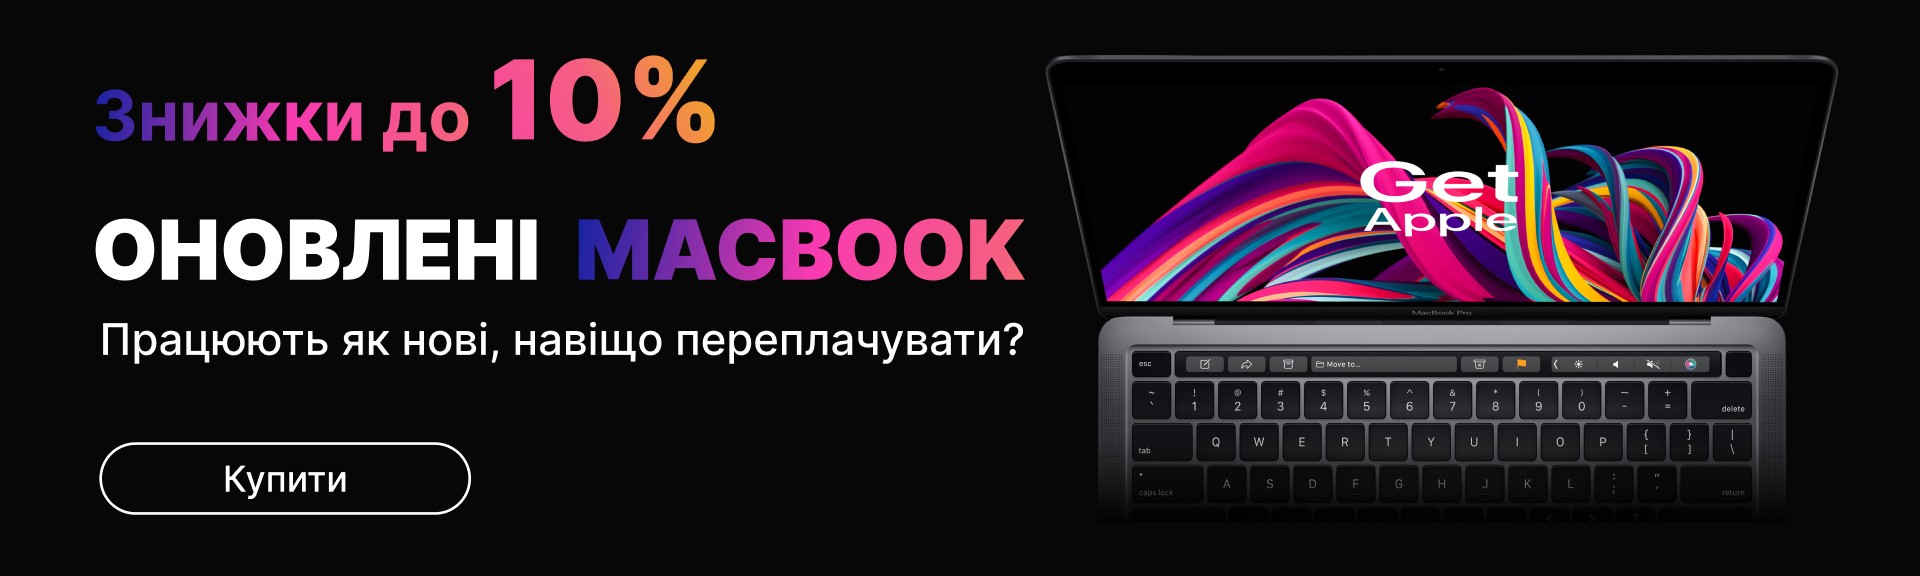 Ноутбуки Macbook